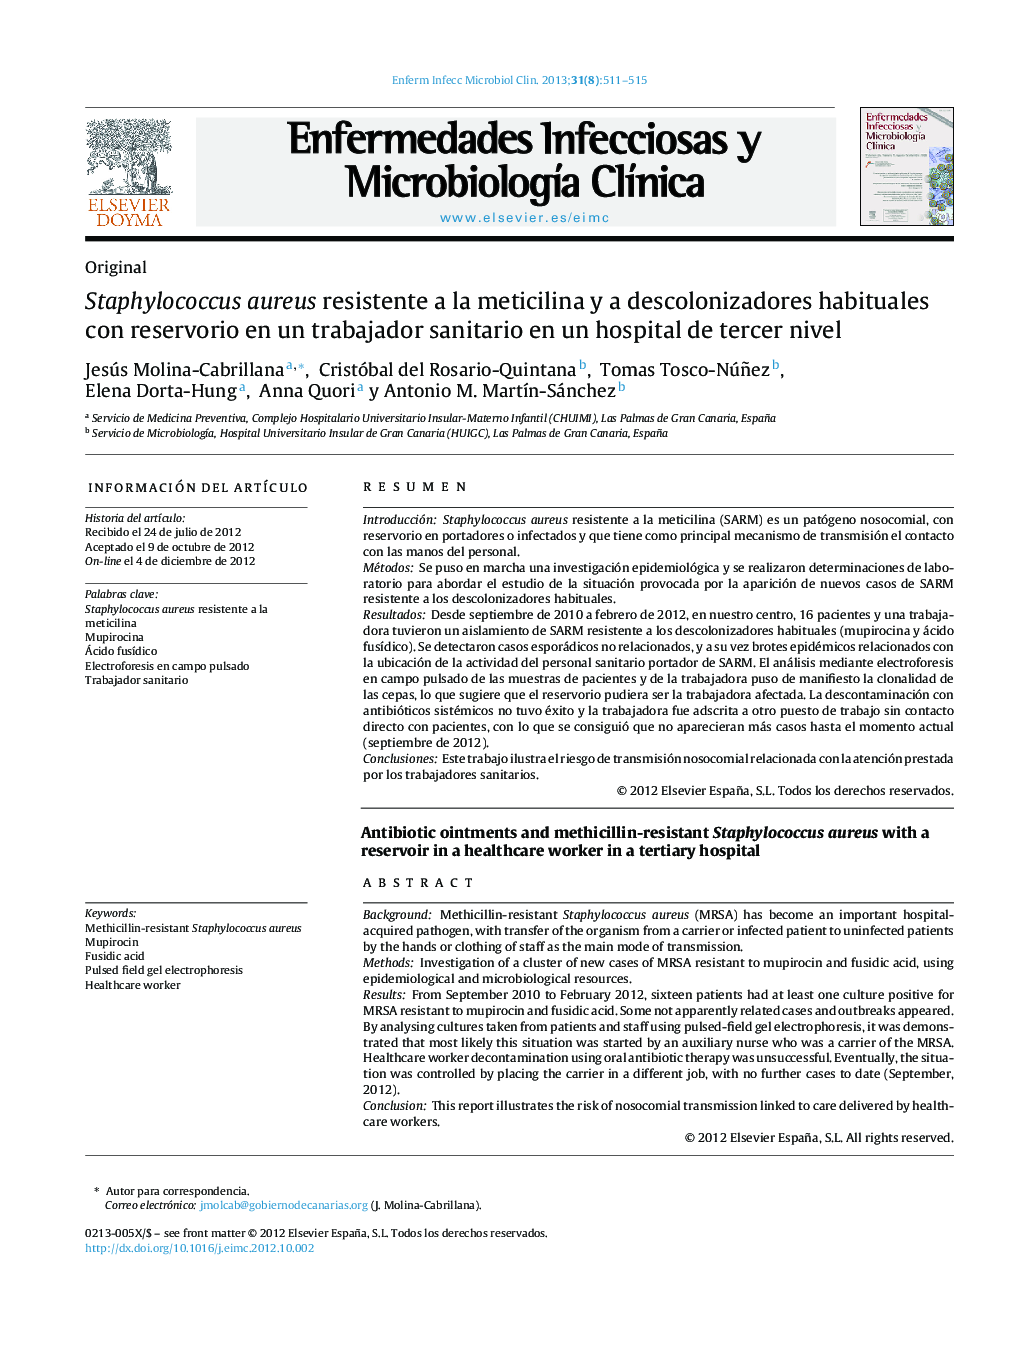 Staphylococcus aureus resistente a la meticilina y a descolonizadores habituales con reservorio en un trabajador sanitario en un hospital de tercer nivel